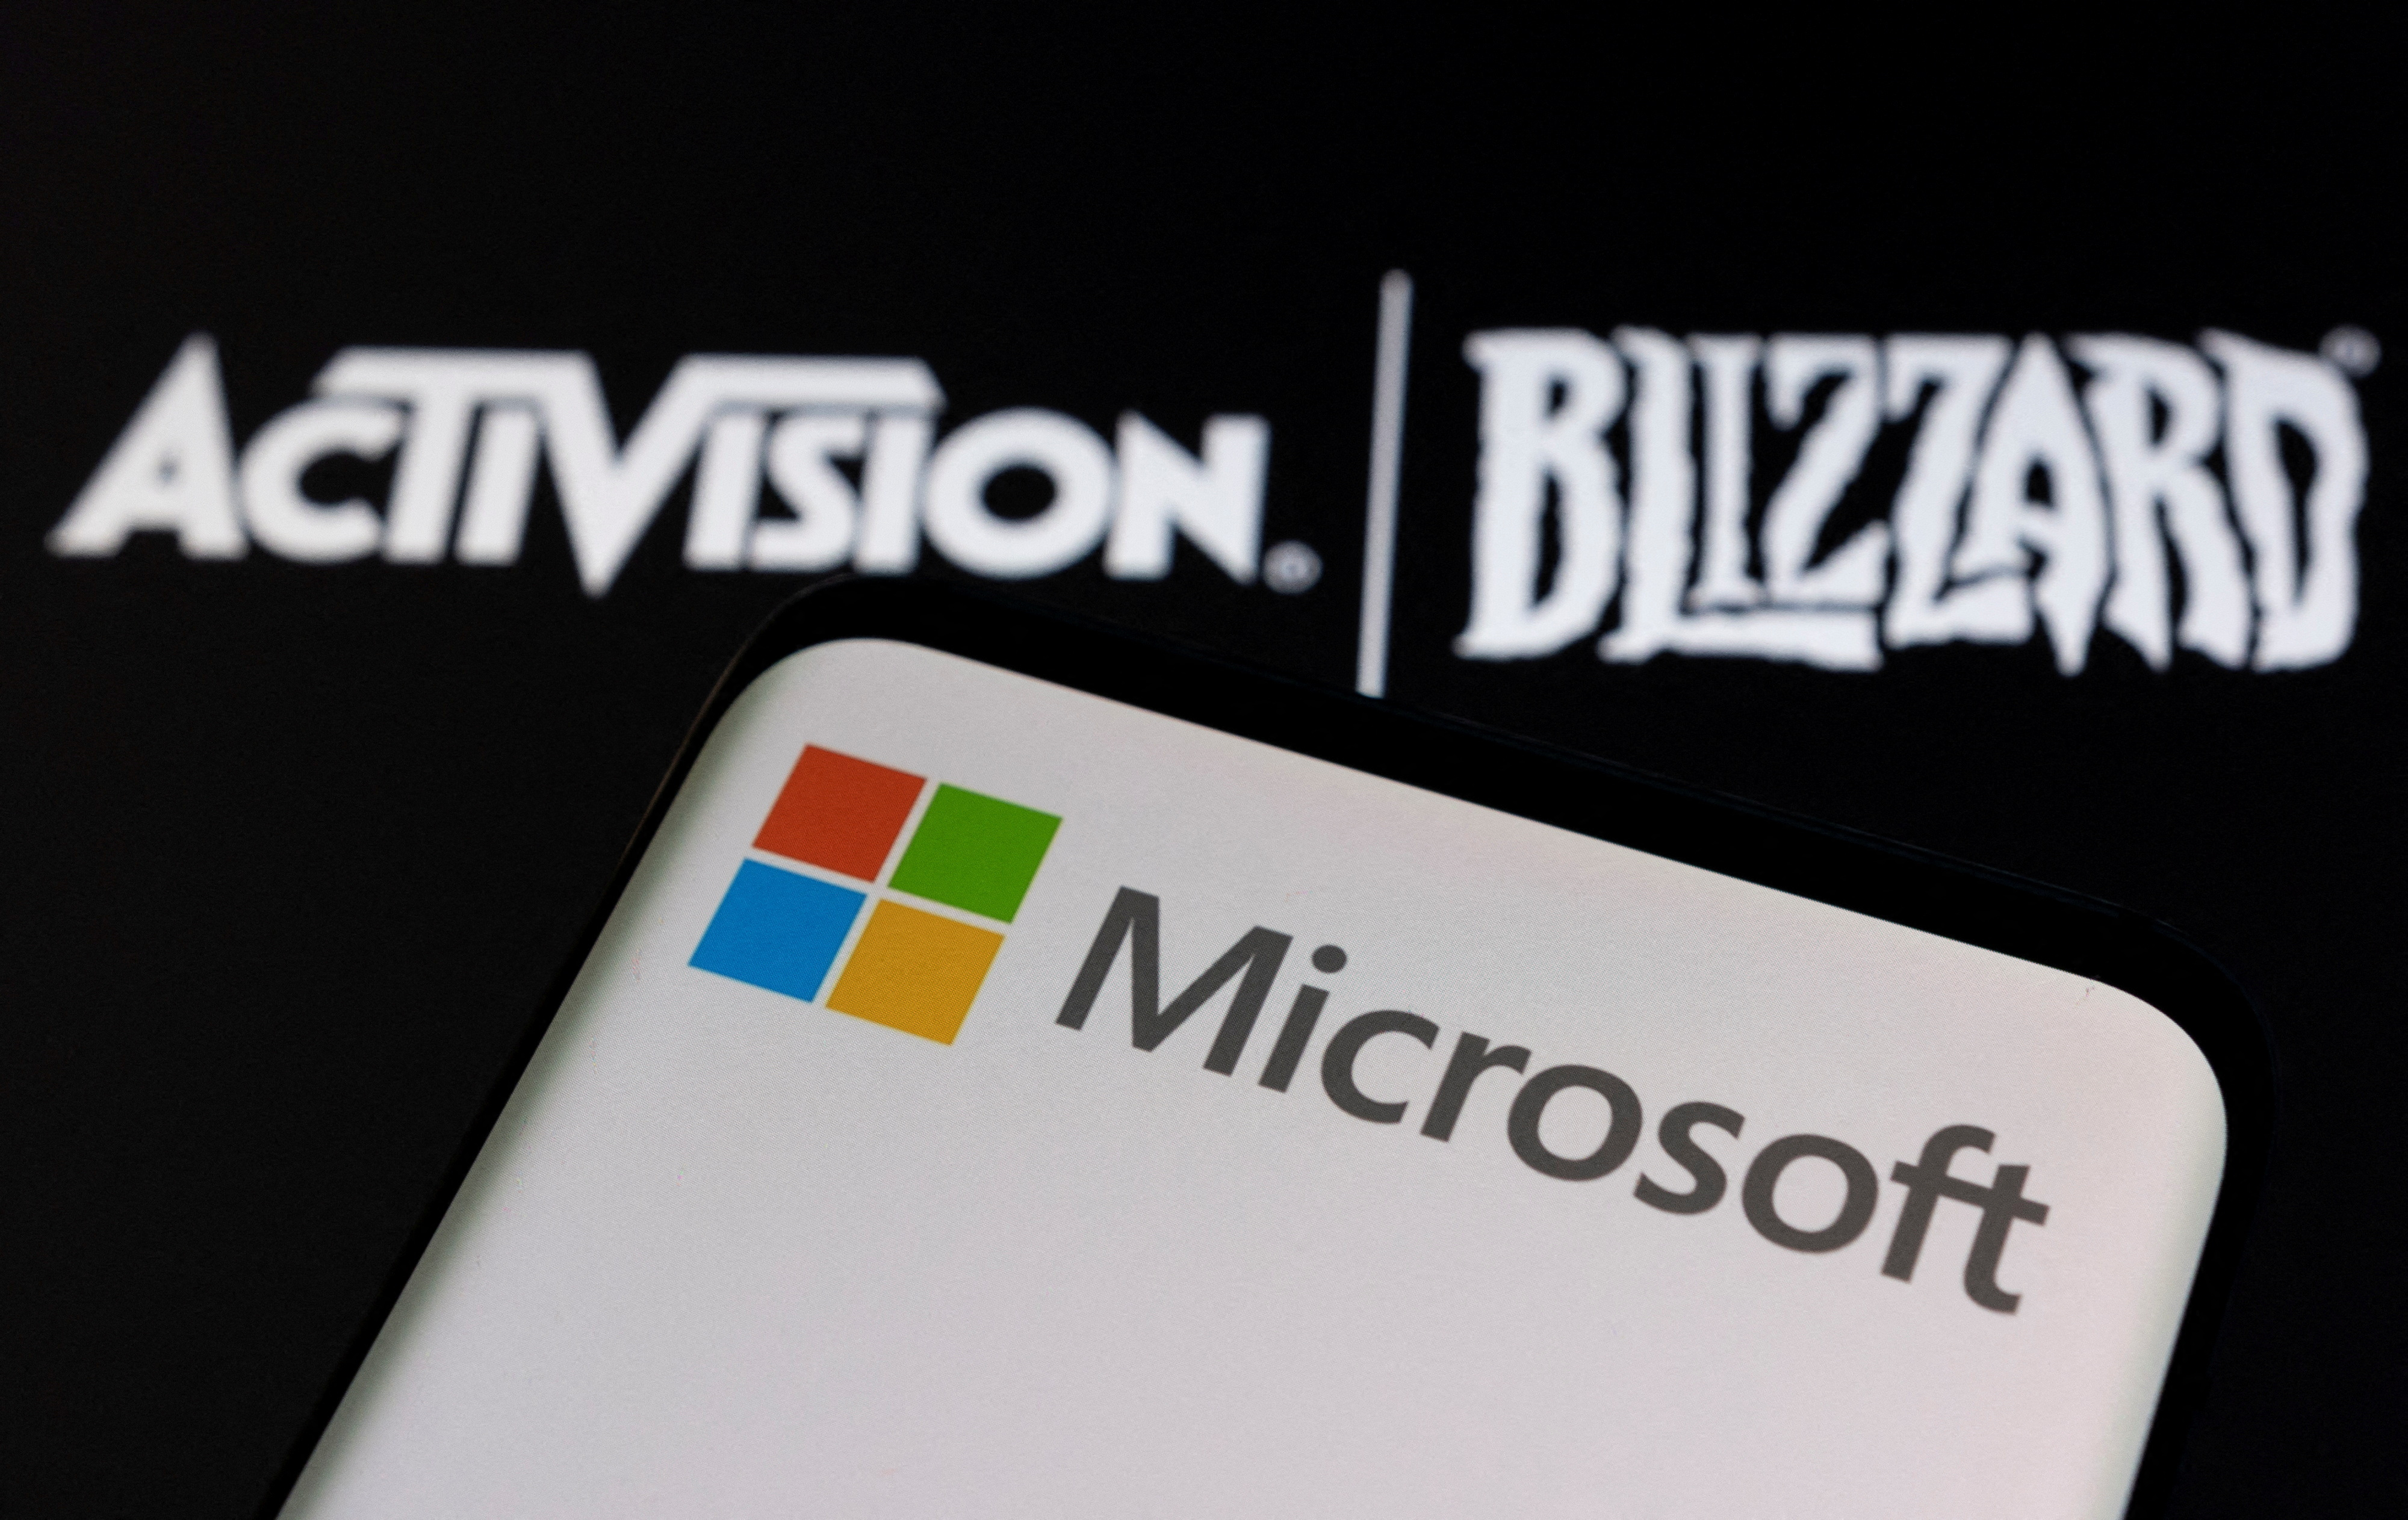 Les dirigeants de Microsoft et de Xbox défendront personnellement l'entreprise devant le tribunal pour bloquer l'acquisition de Blizzard par Activision.